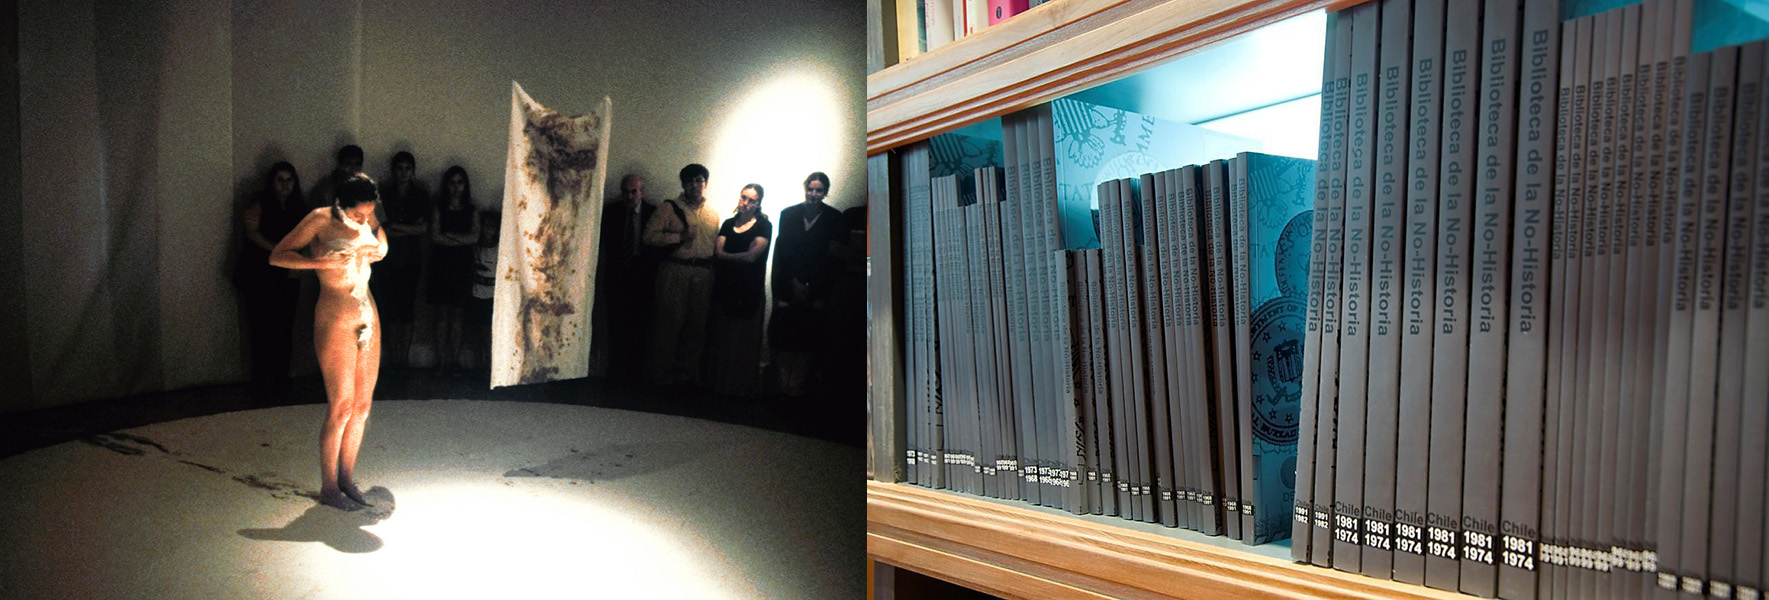 El cuerpo de la memoria, de Janet Toro (1999), et la Biblioteca de la no-historia, de Voluspa Jarpa (2010). Photos reproduites avec l'aimable autorisation des artistes.